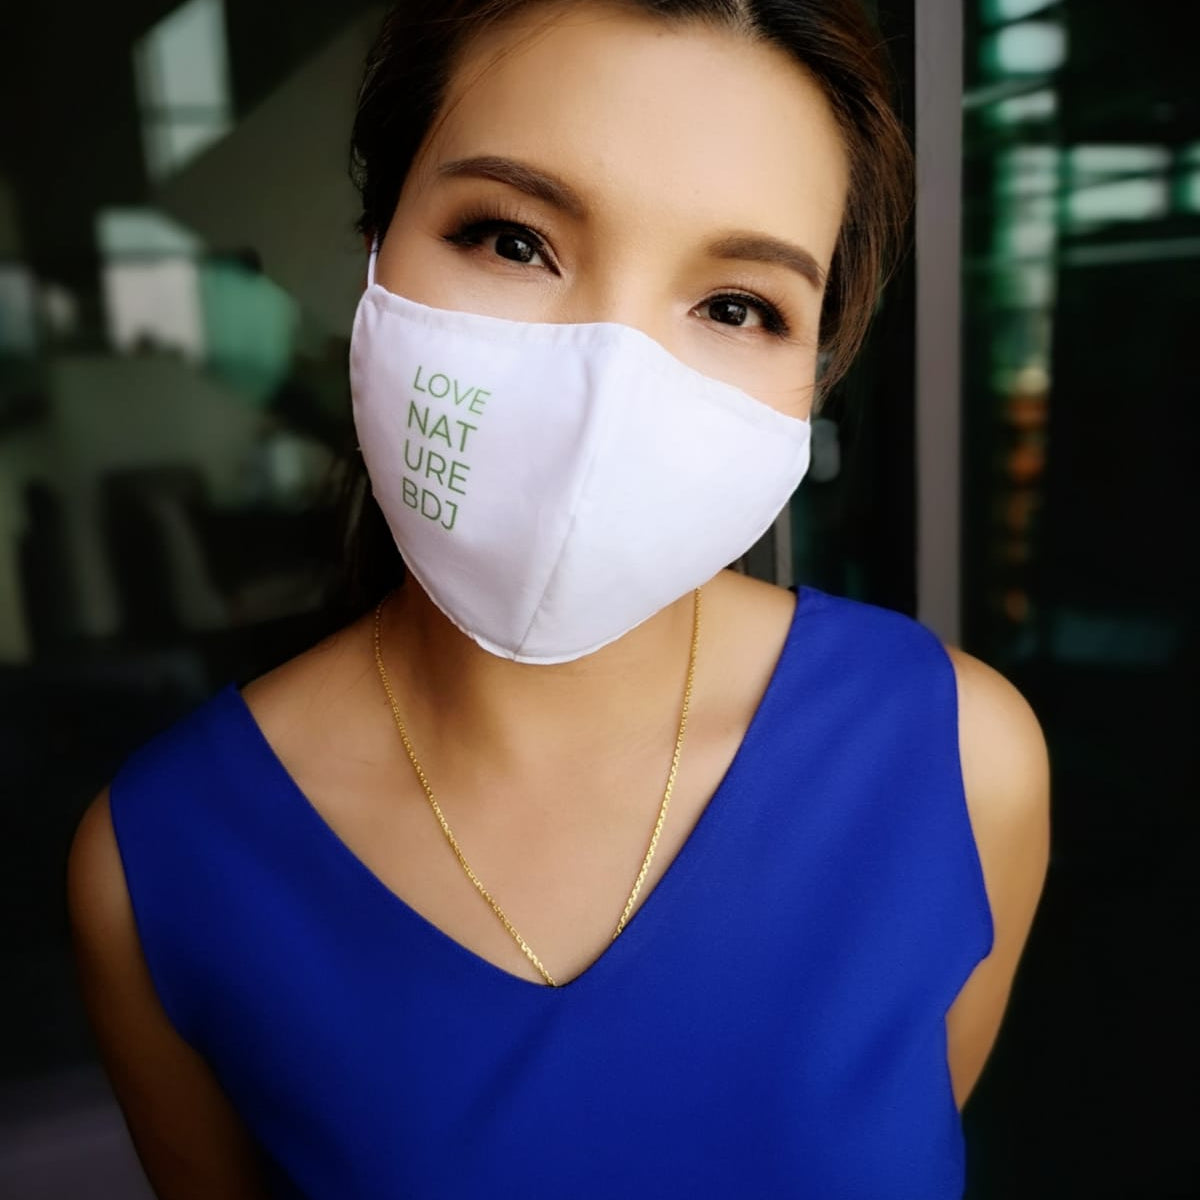 Washable Face Mask with filter pocket - Unisex - Medium Size